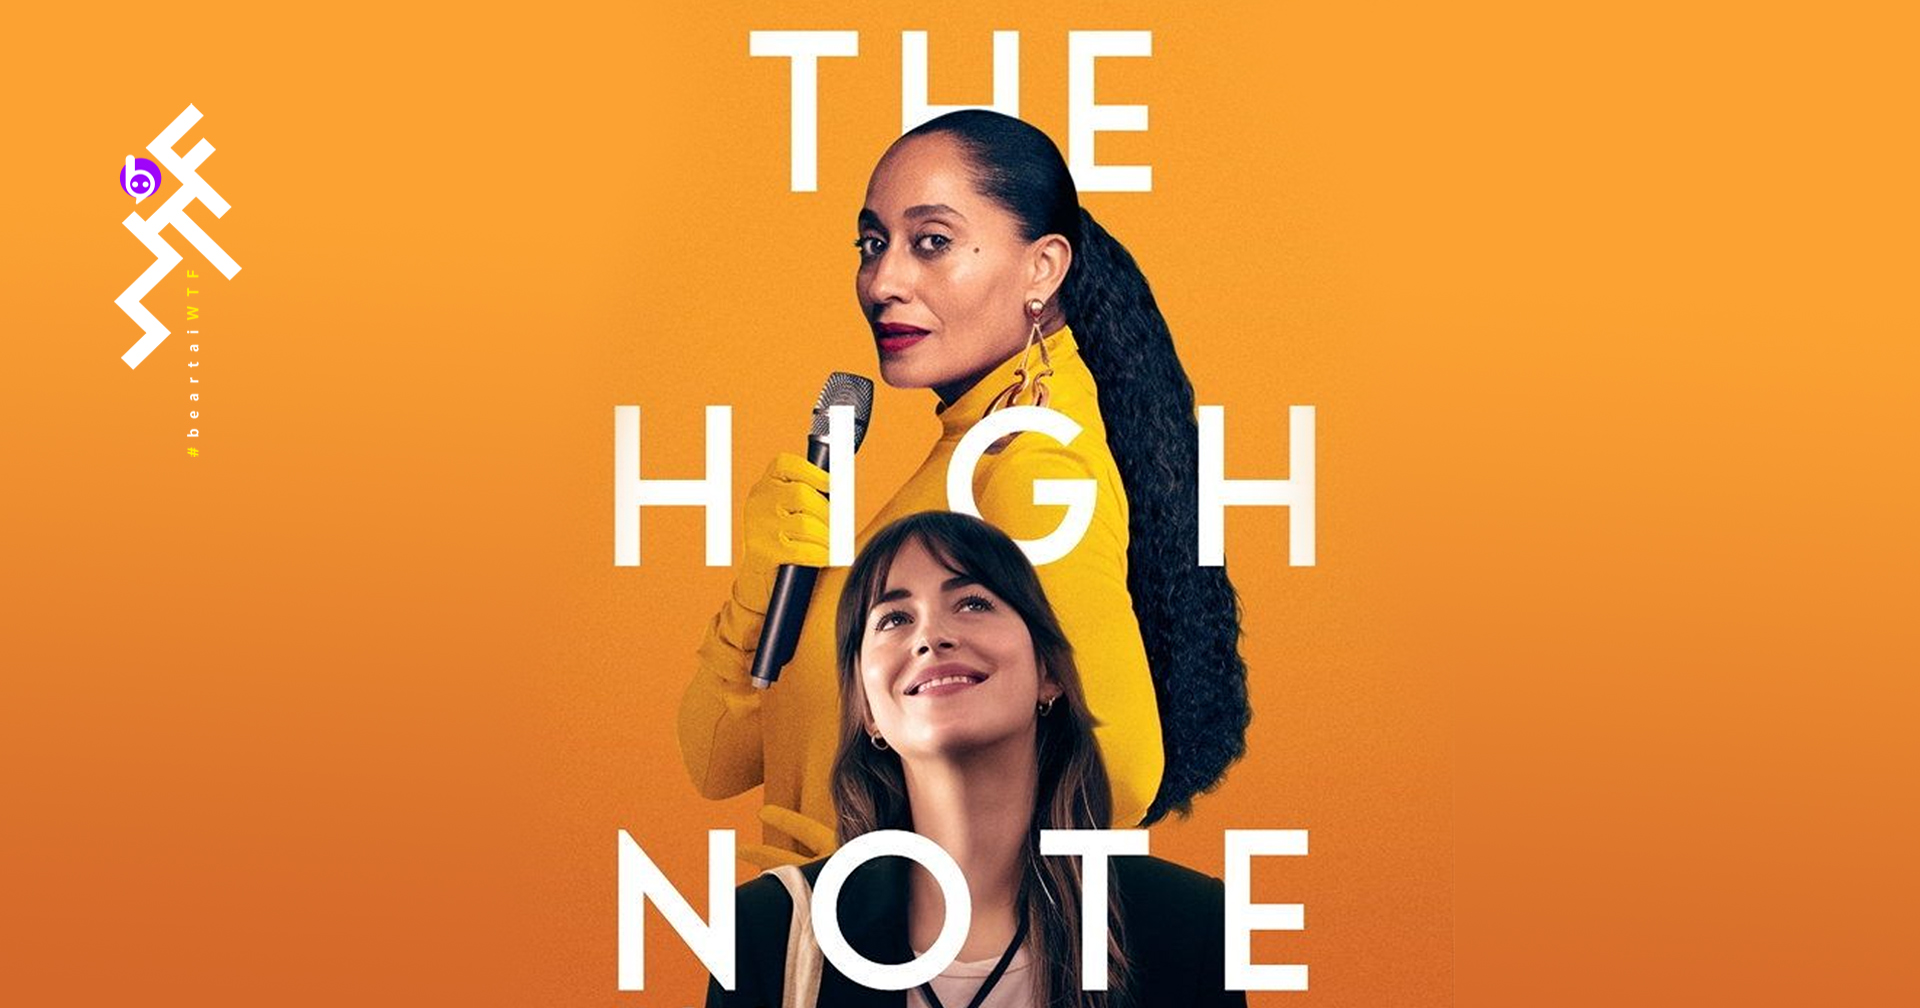 [รีวิว] The High Note: ดูเพลิน เพลงเพราะ ตบหน้านักฝันอย่างปรานี